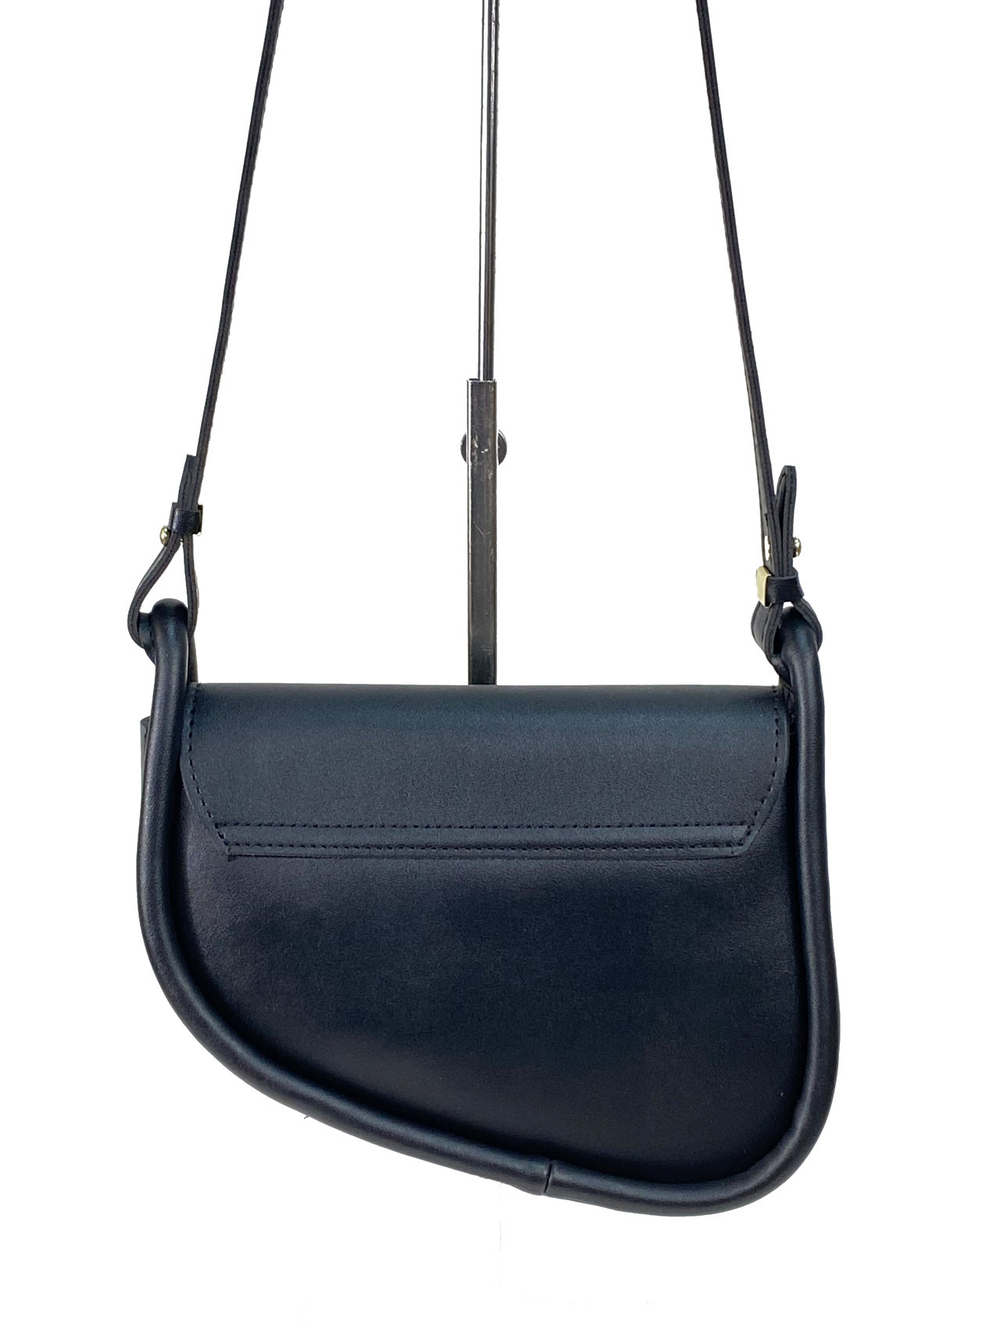 Женская сумка - седло из искусственной кожи, цвет черный